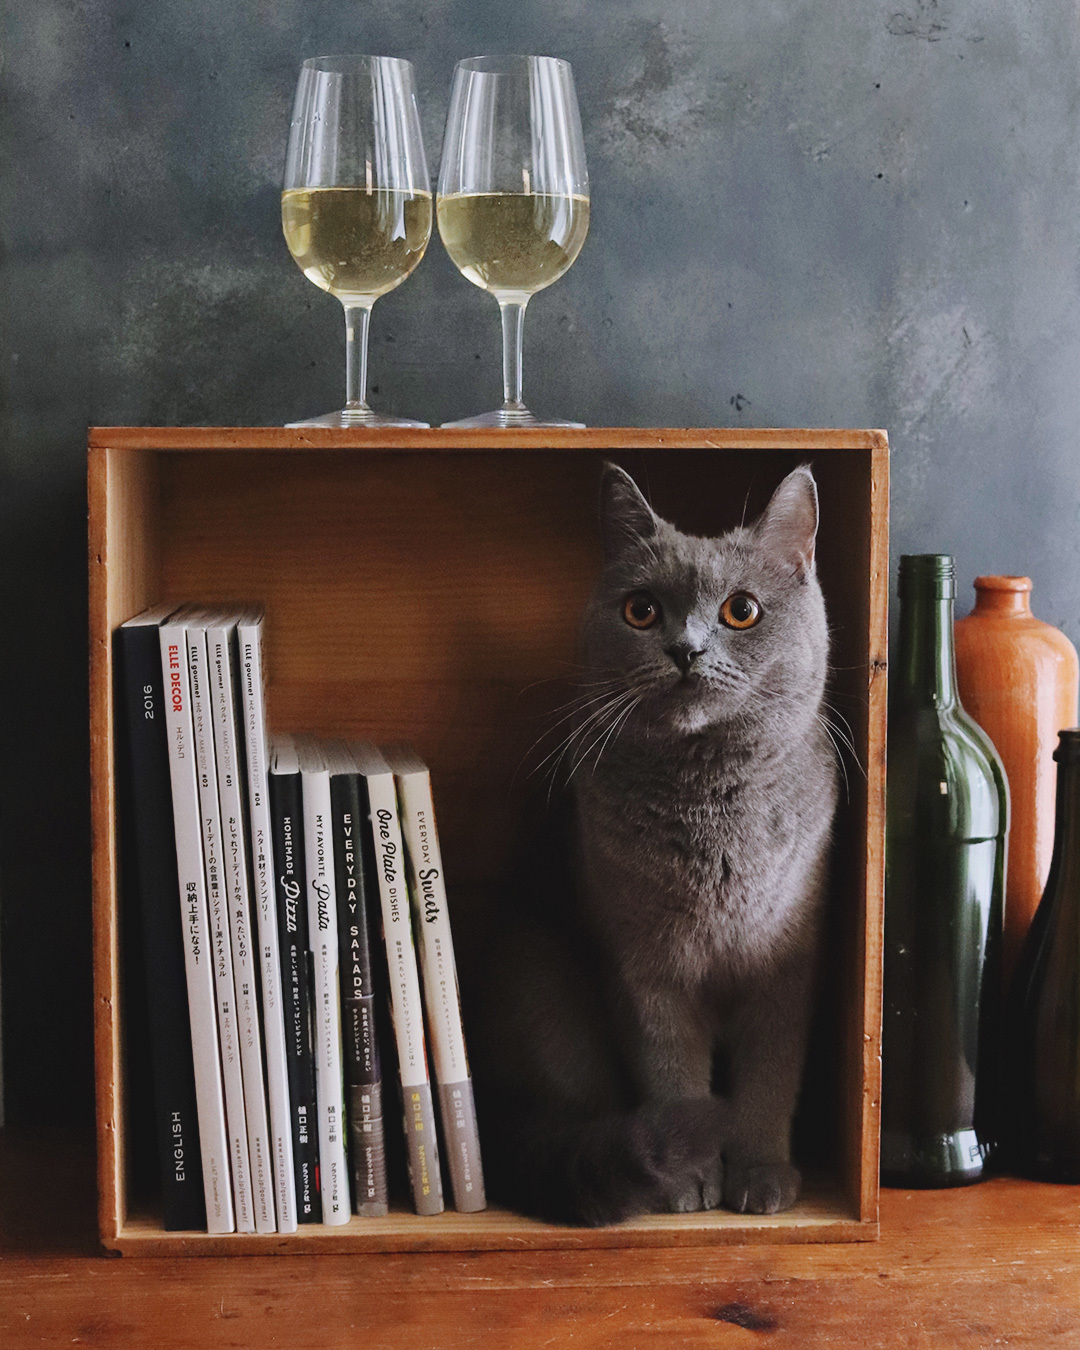 wine, book, & cat